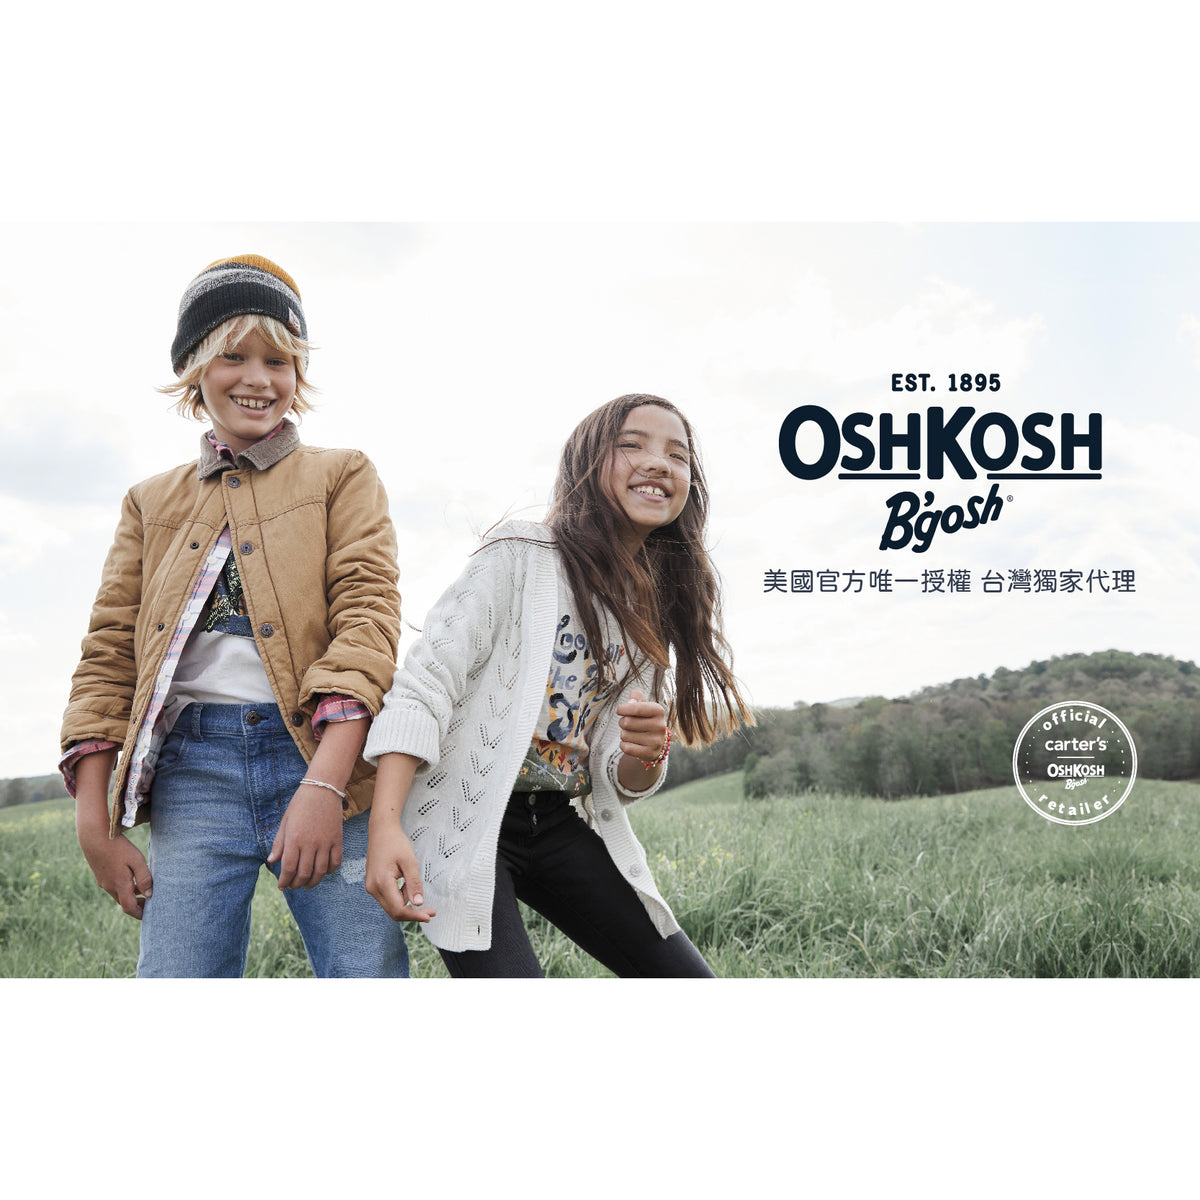 OshKosh light-colored denim trousers (5-8)